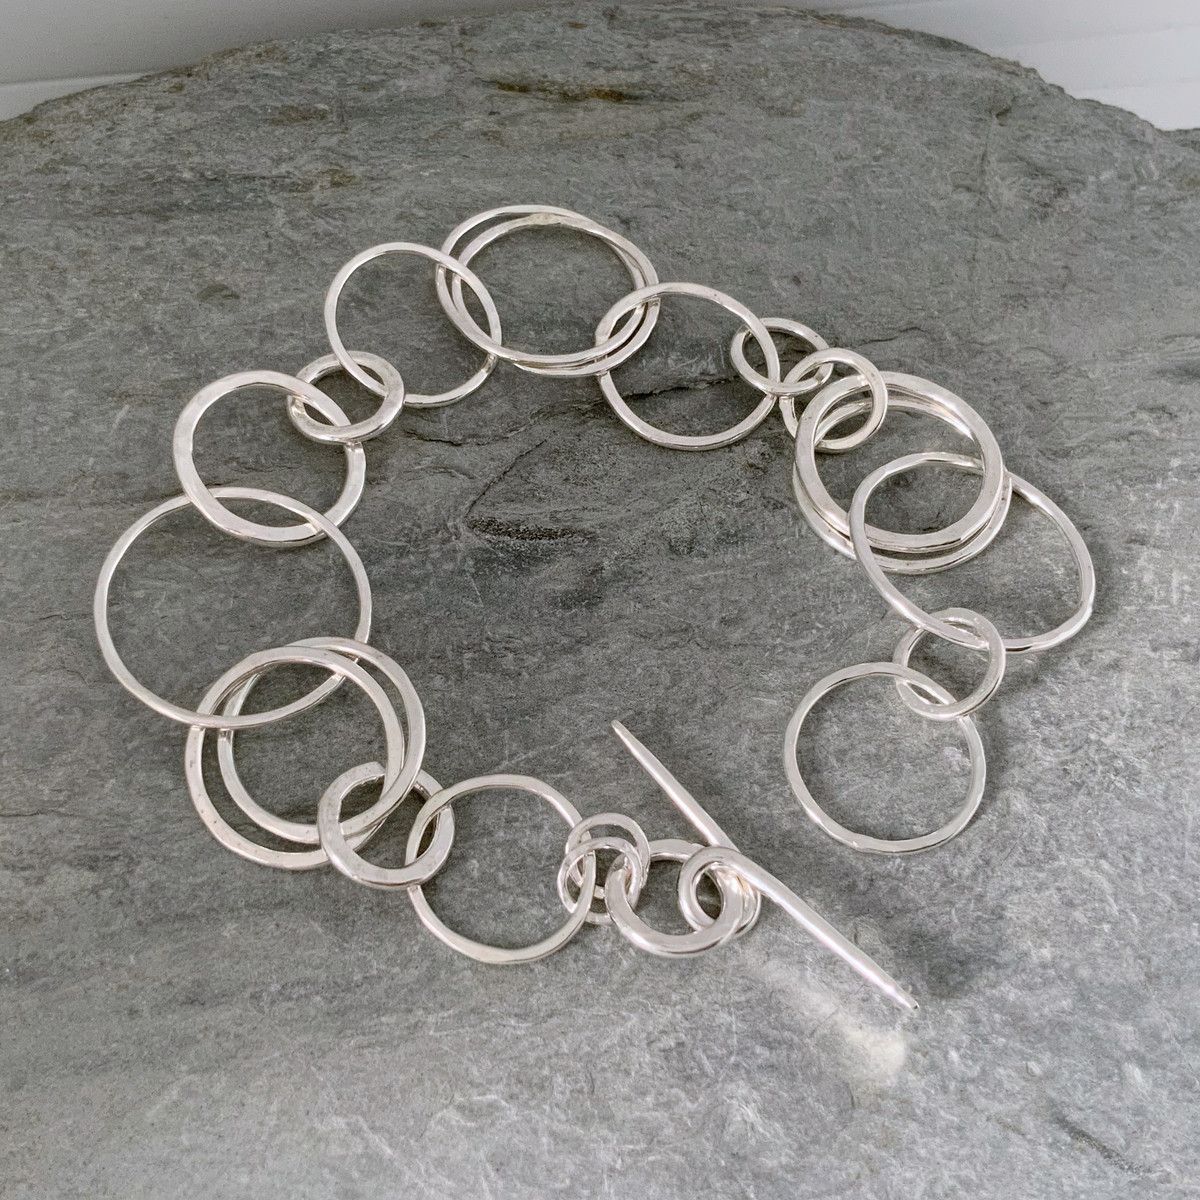 Handmade silver chain bracelet